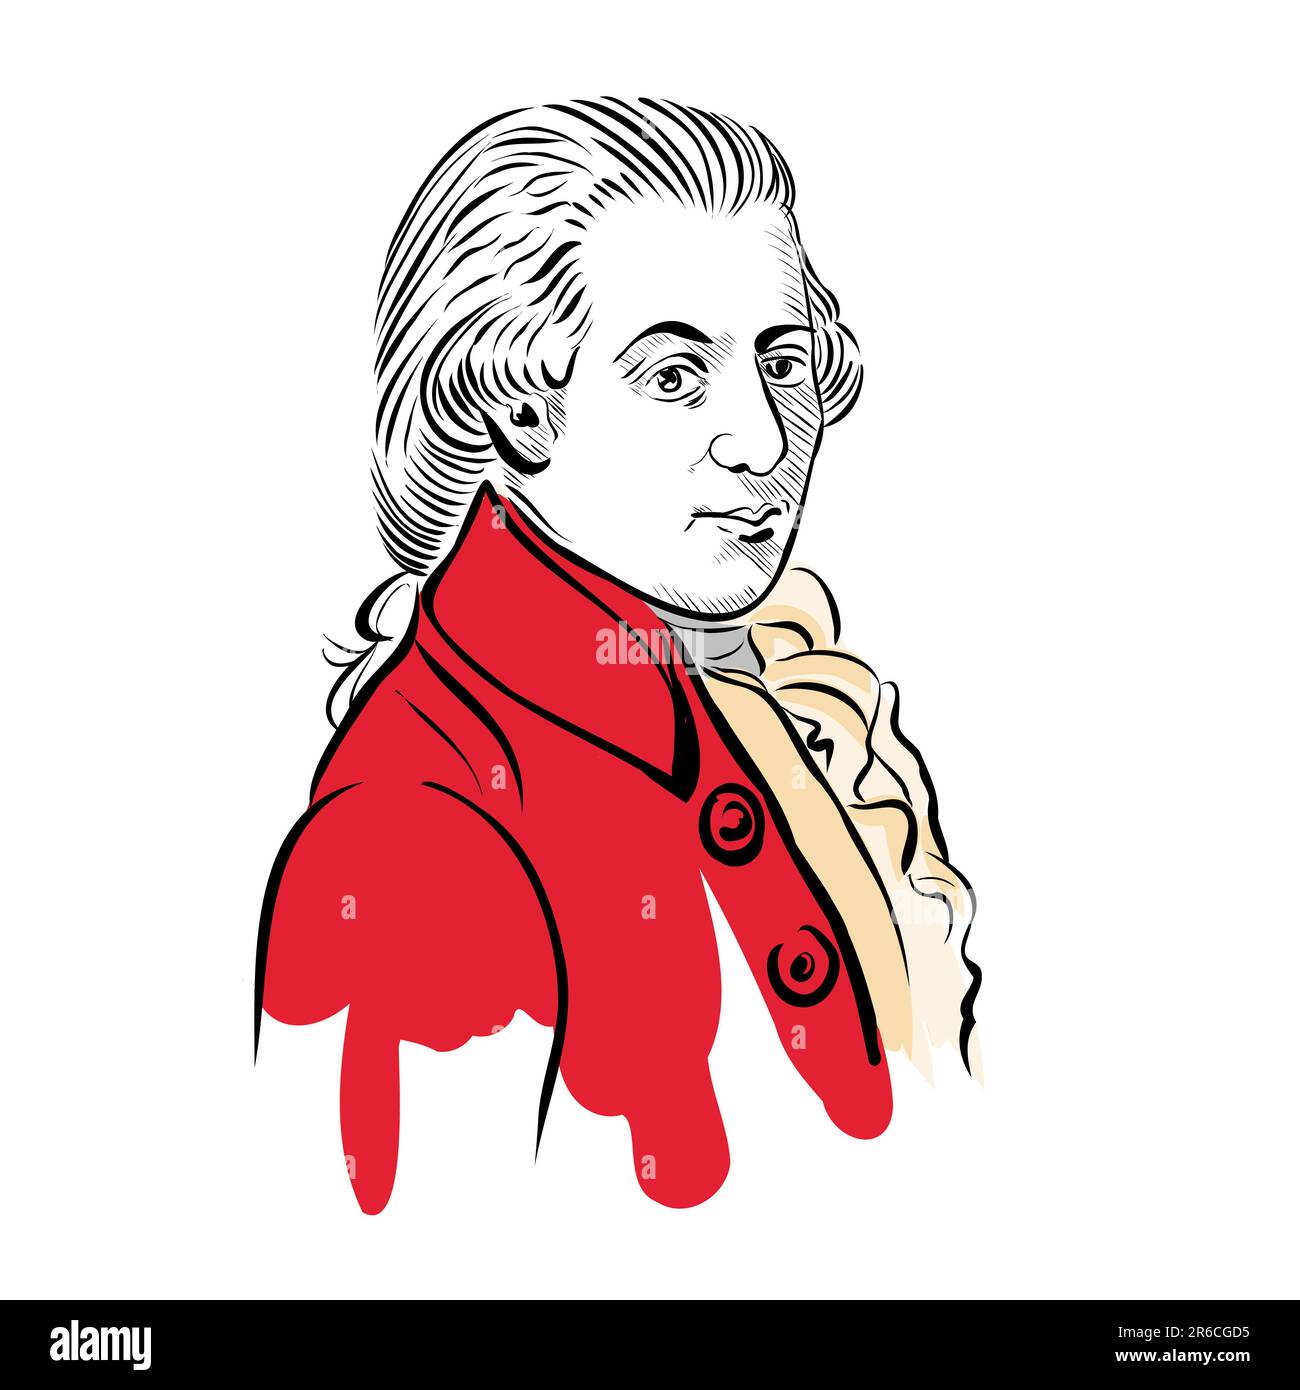 Mozart, Wolfgang Amadeus, Porträtbild, Vektordarstellung, von Hand gezeichnete Schwarzweißskizze, isoliert auf weißem Hintergrund Stockfoto